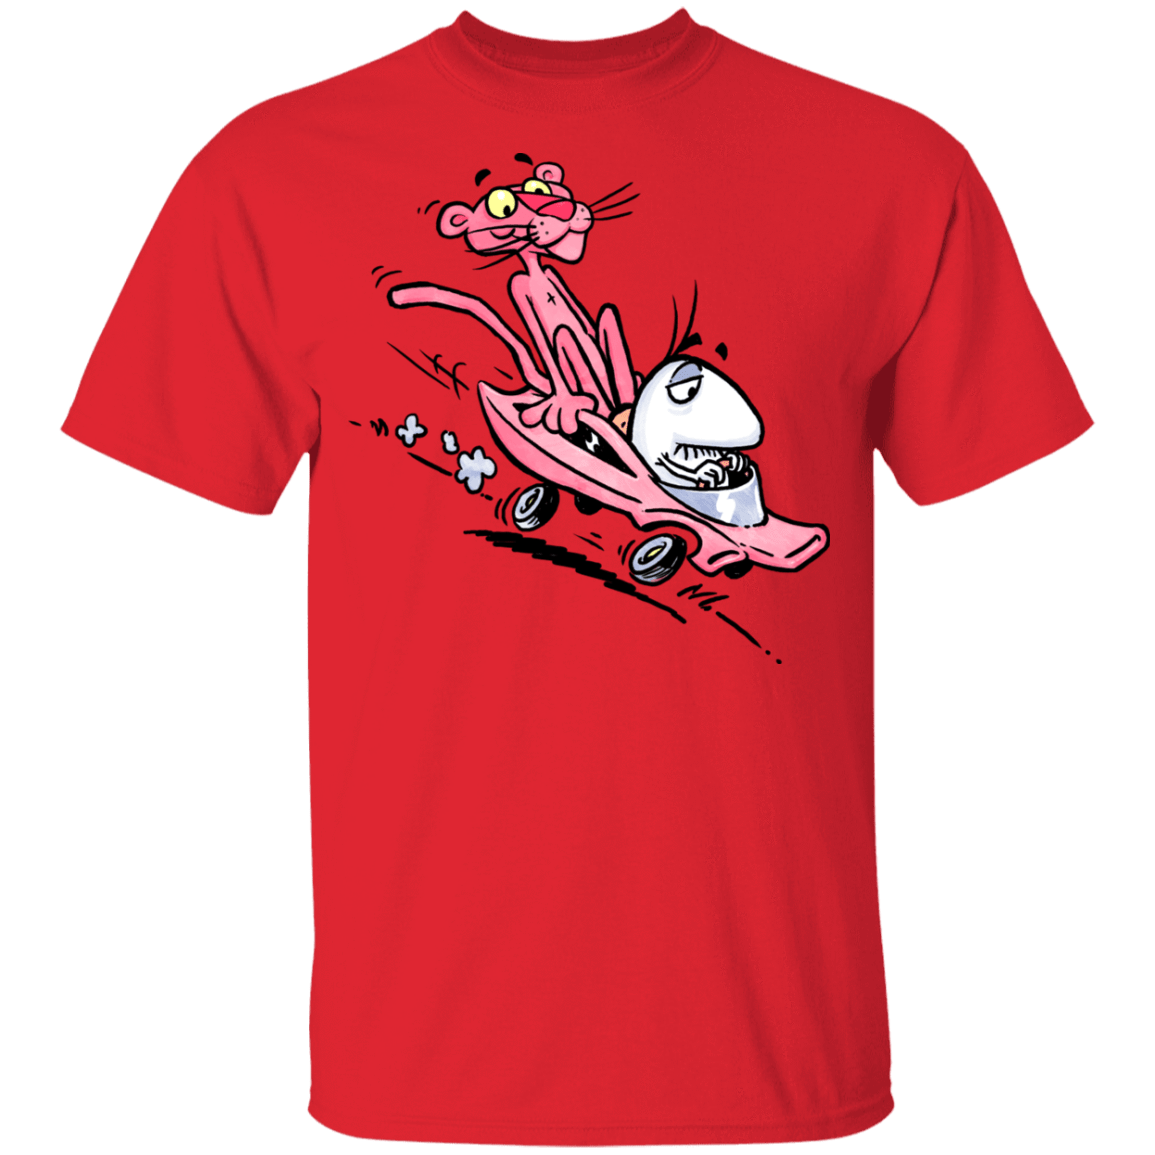 T-Shirts Red / YXS Littleman n Pinks Youth T-Shirt